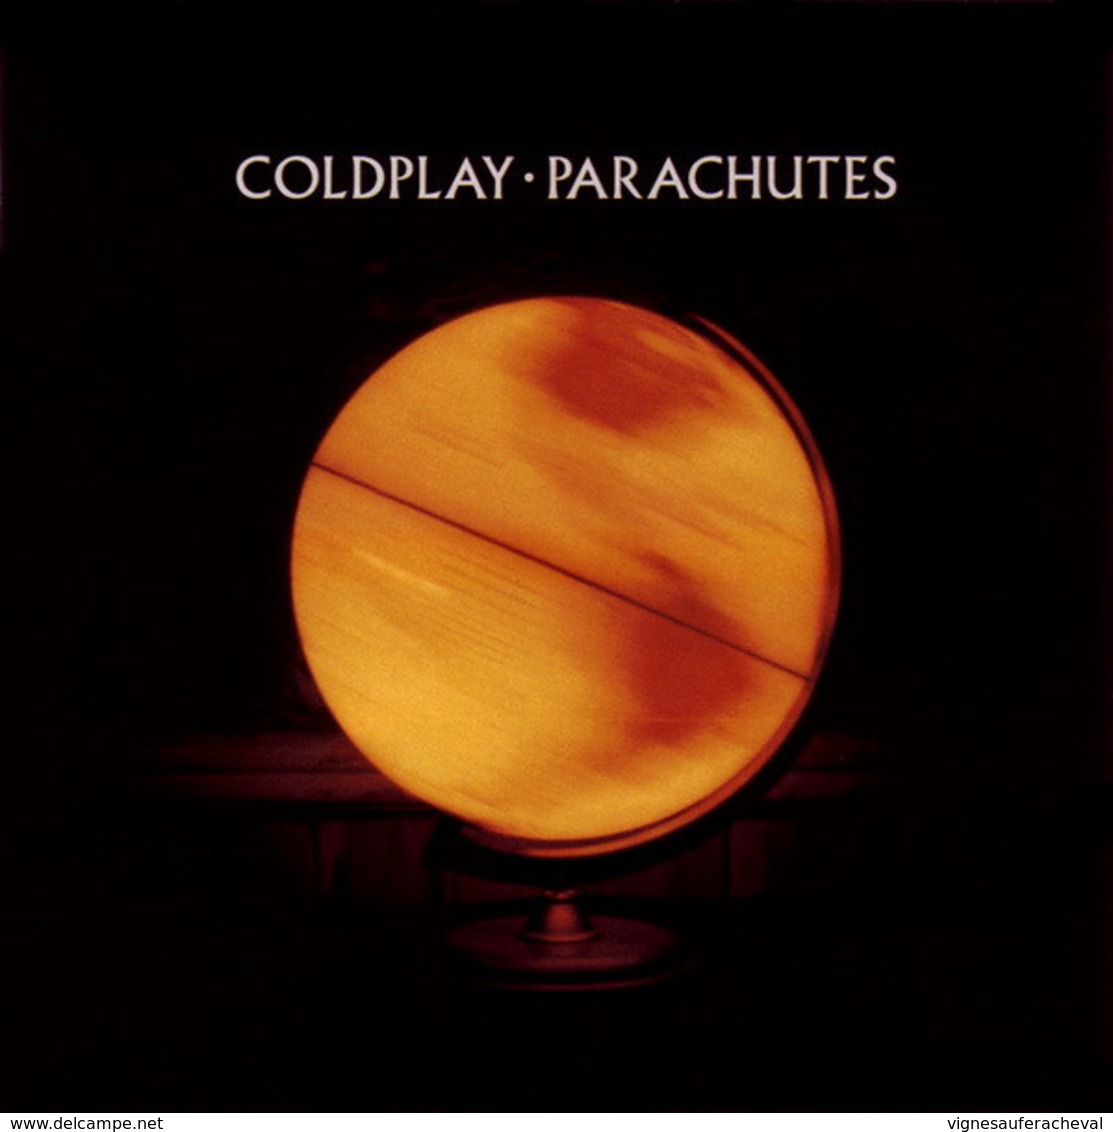 Coldplay- Parachutes - Hard Rock & Metal